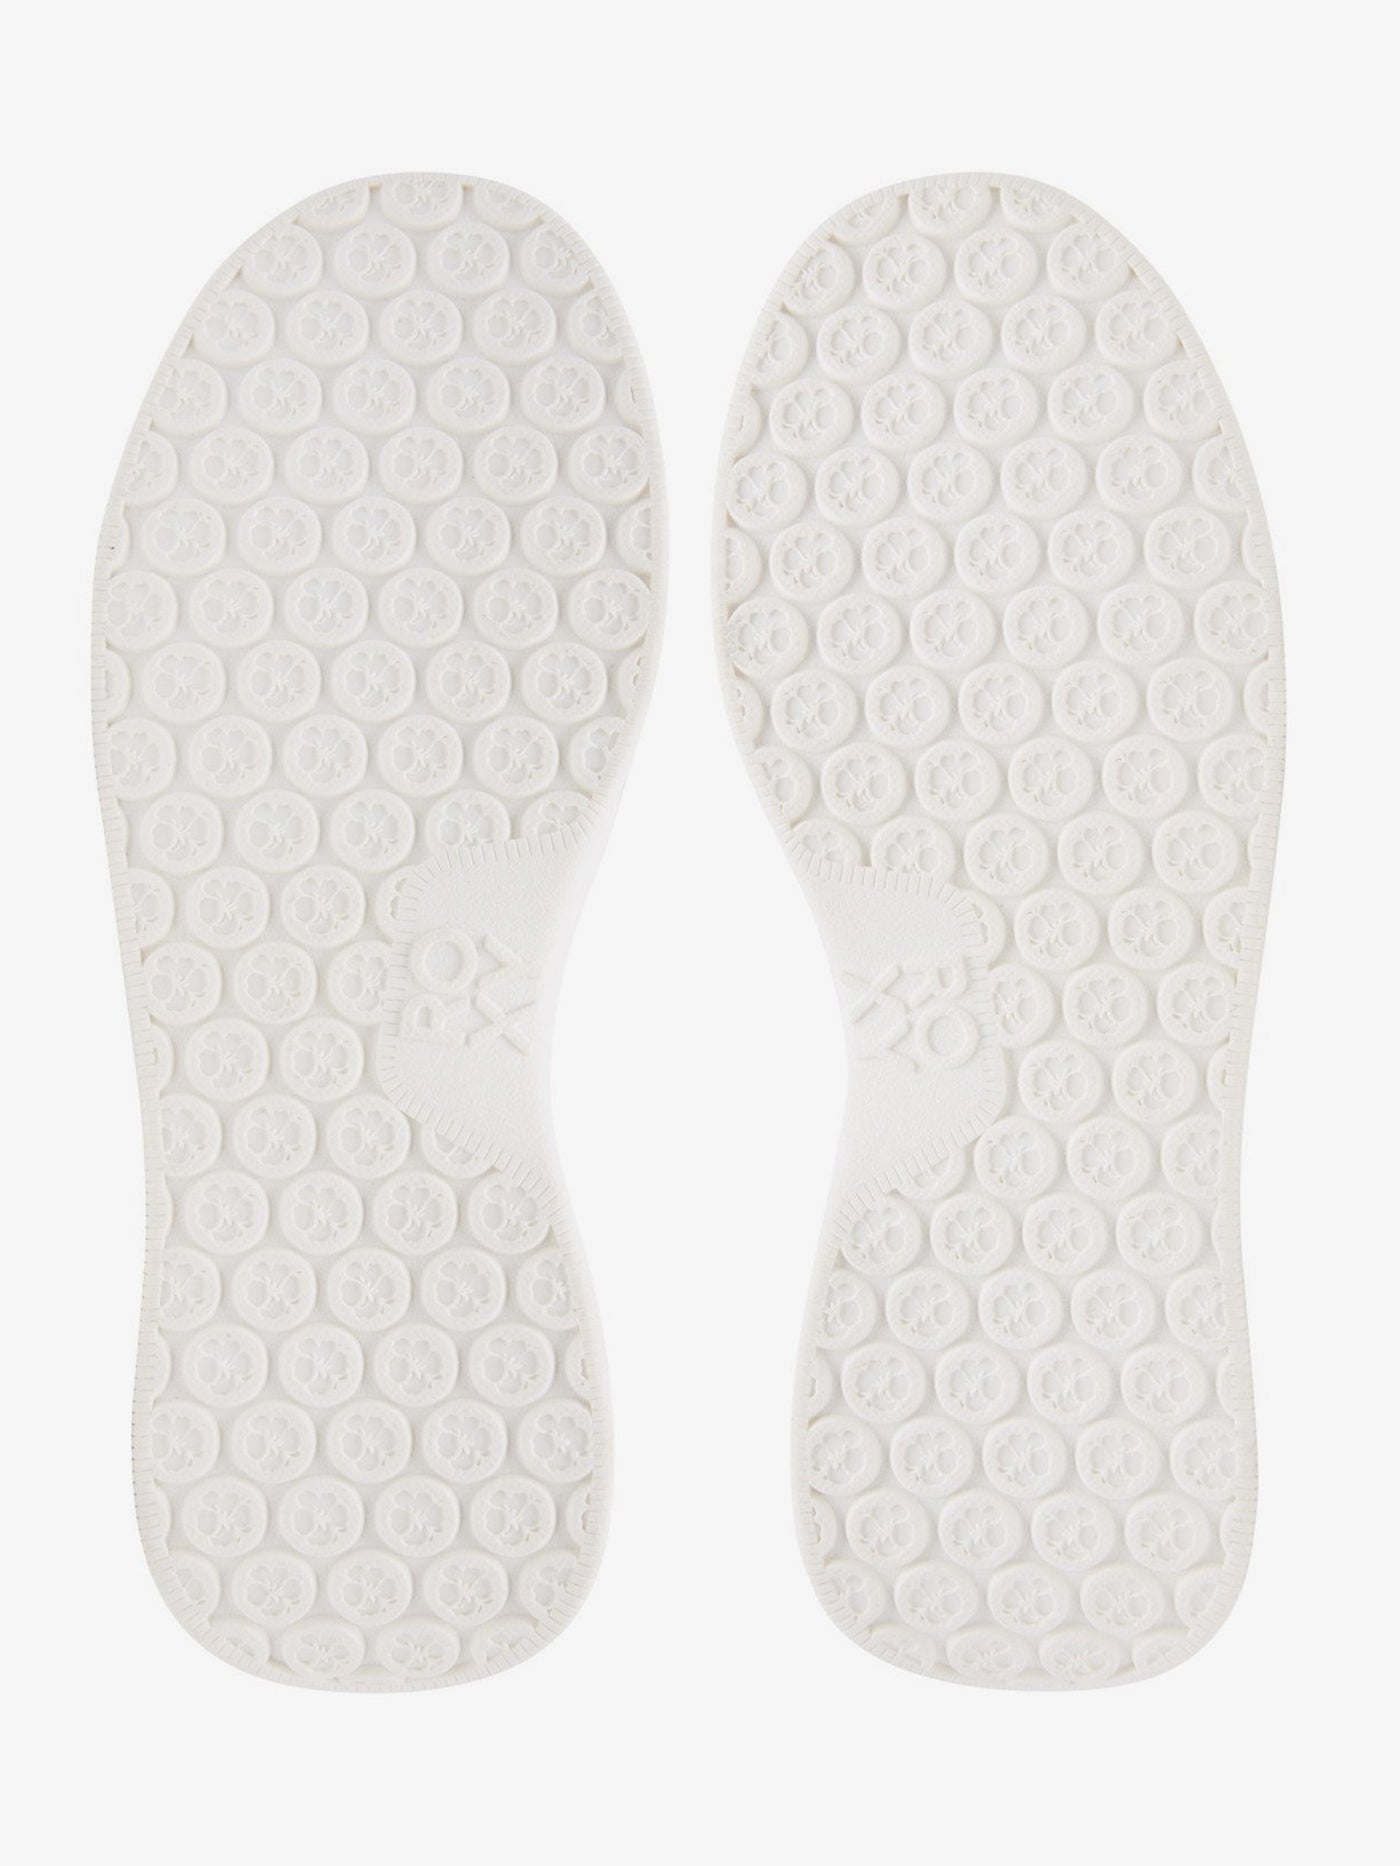 Roxy Harper White/White Shoes